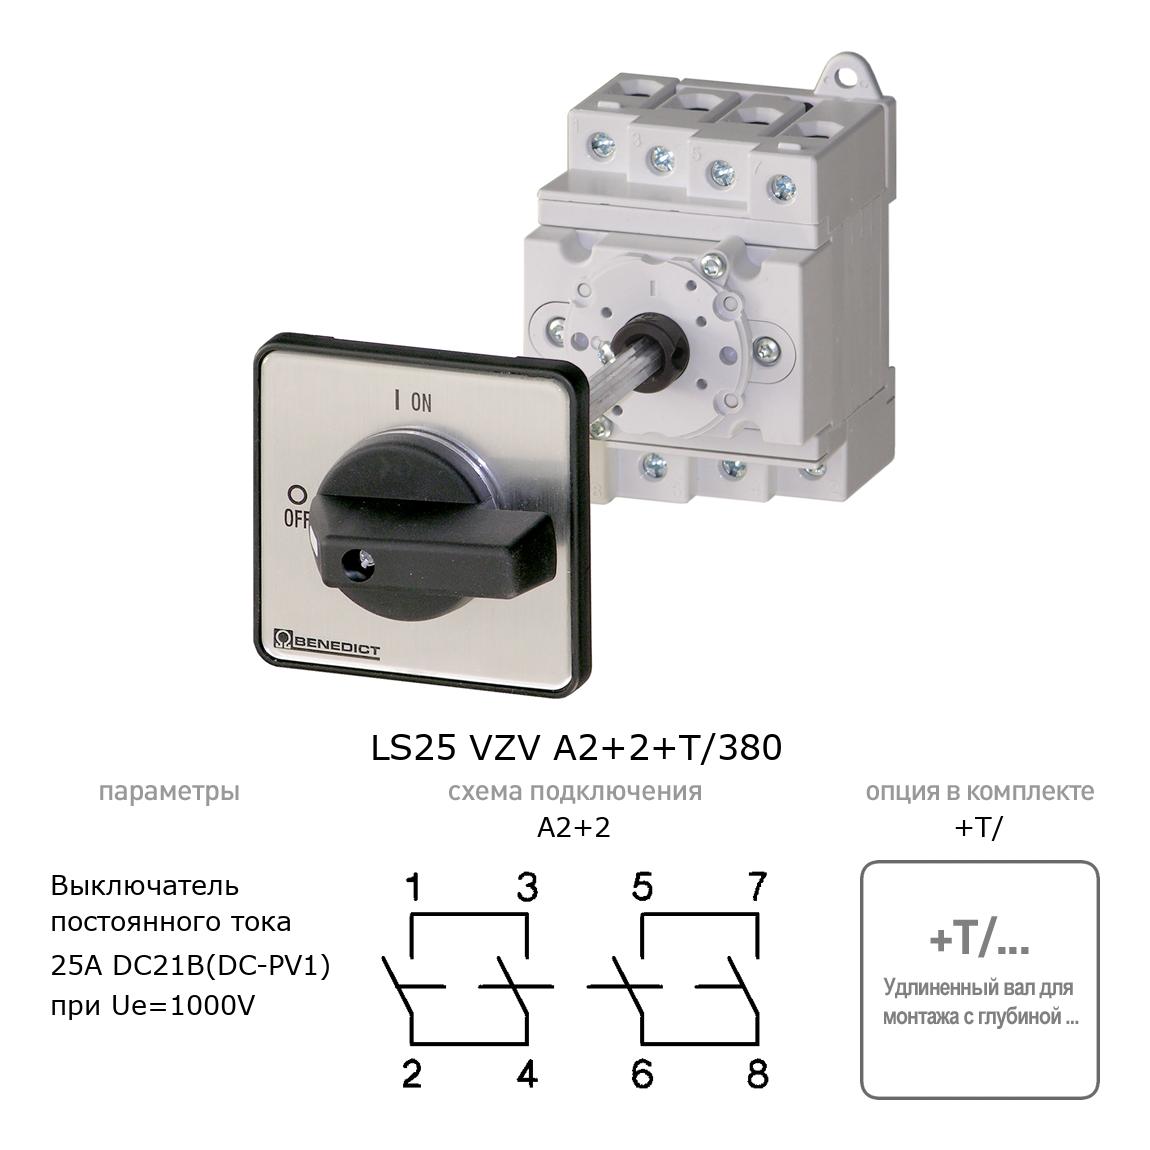 Кулачковый переключатель для постоянного тока (DC) LS25 VZV A2+2+T/380 BENEDICT